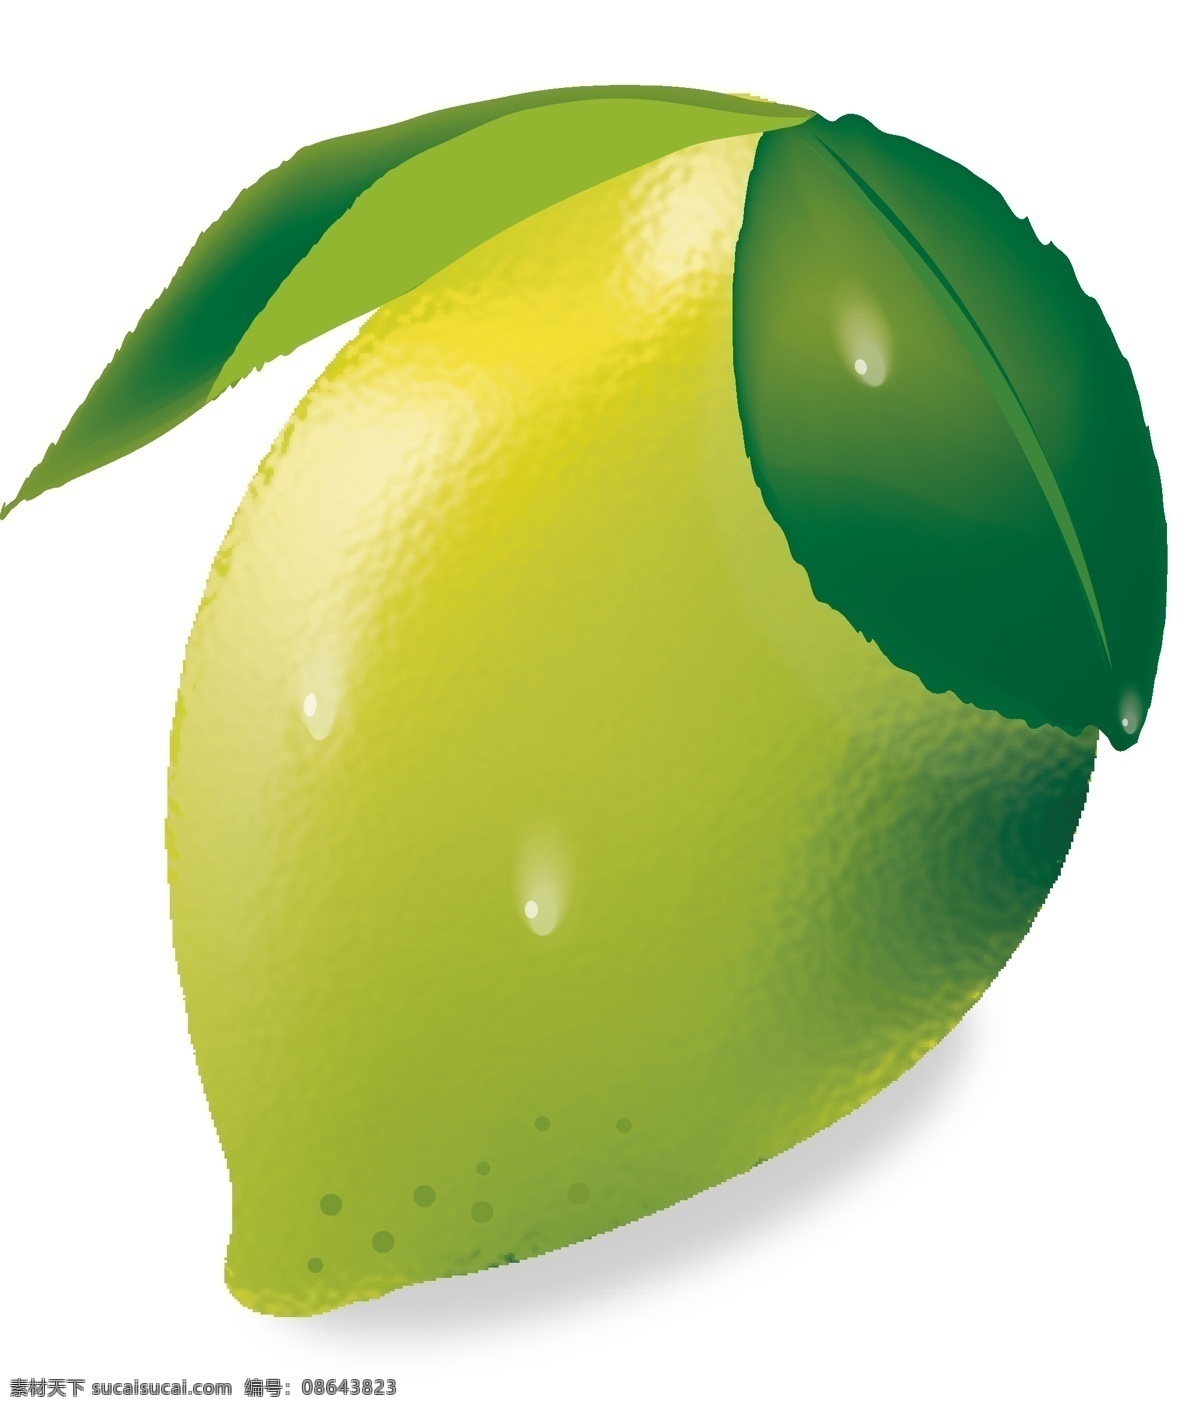 柠檬 餐饮美食 生活百科 生物世界 矢量图库 水滴 水果 柠檬矢量素材 柠檬模板下载 柠檬叶 矢量 日常生活